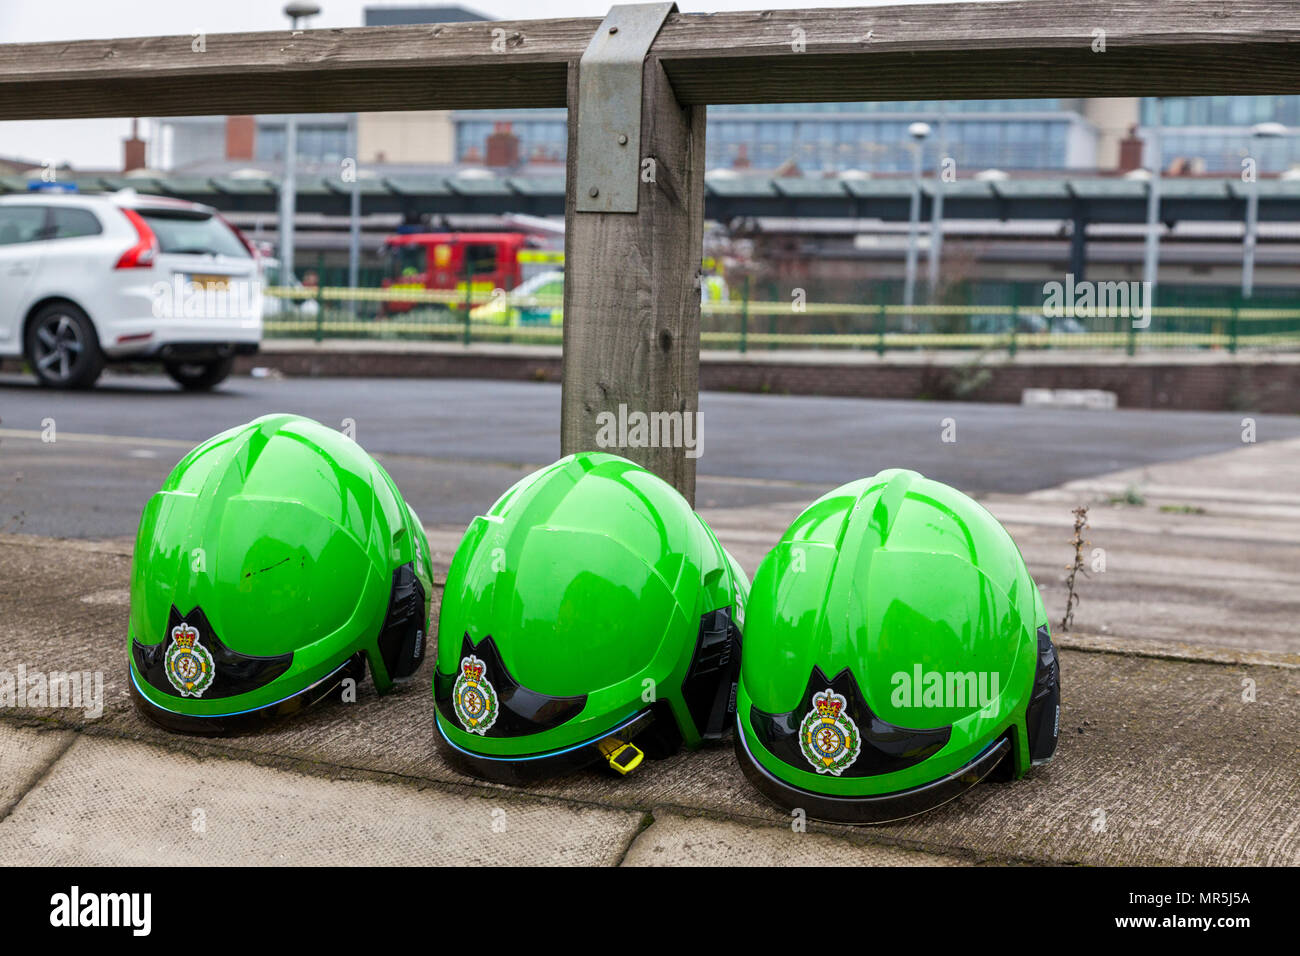 Drei grüne Helme vom Krankenwagen Crew von East Midlands Ambulance Service (EMAS), Nottingham, England, Großbritannien Stockfoto